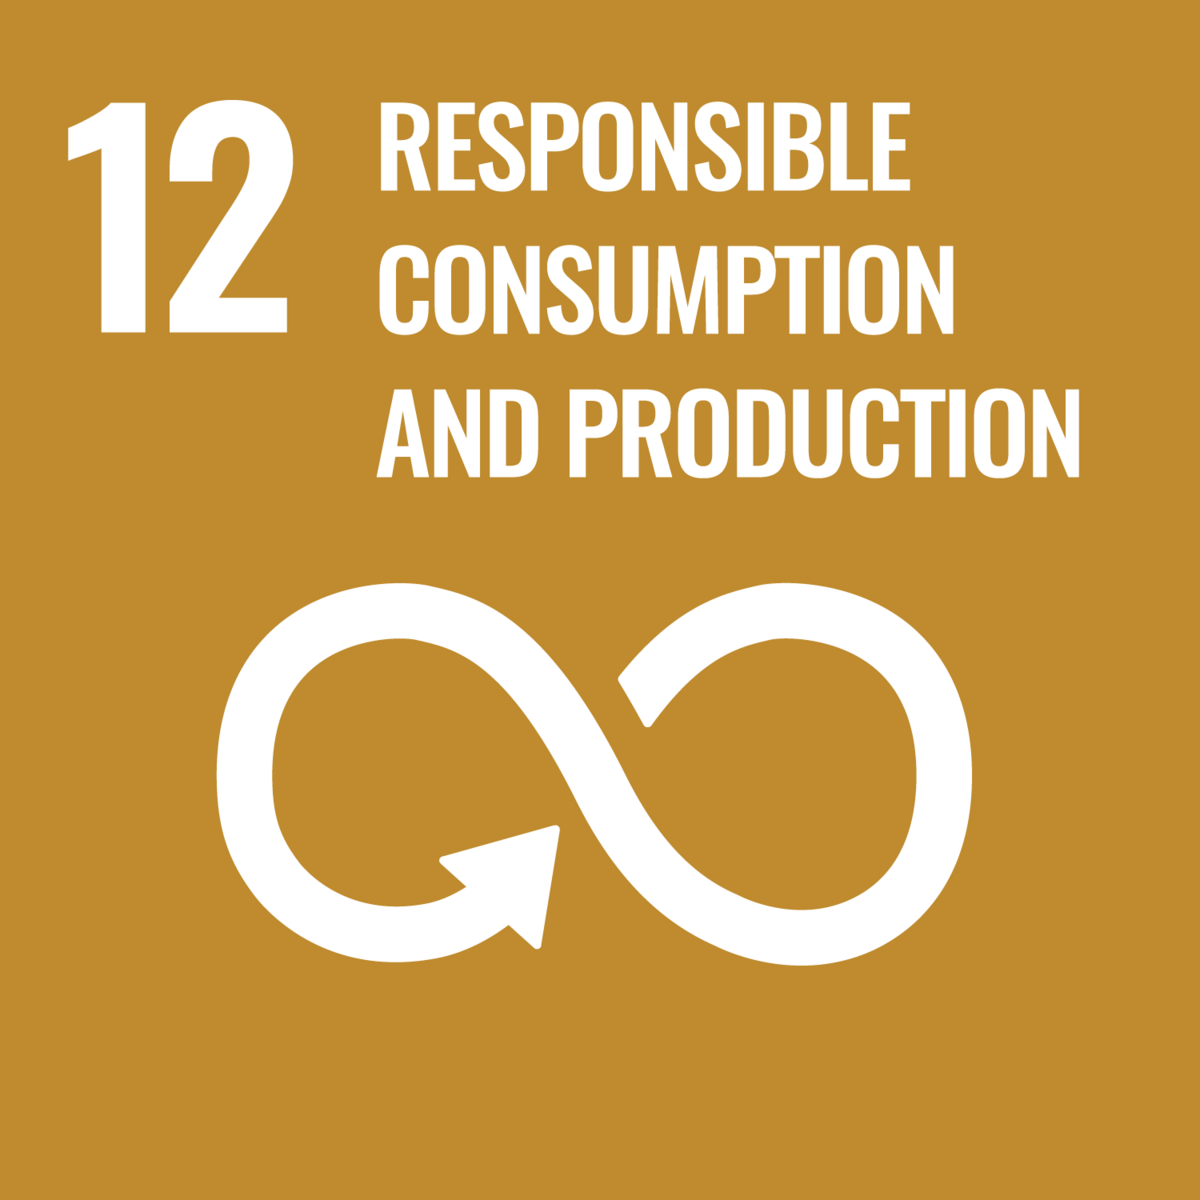 Frau von Reden, bedeutet das SDG12 Verzicht auf Konsum?